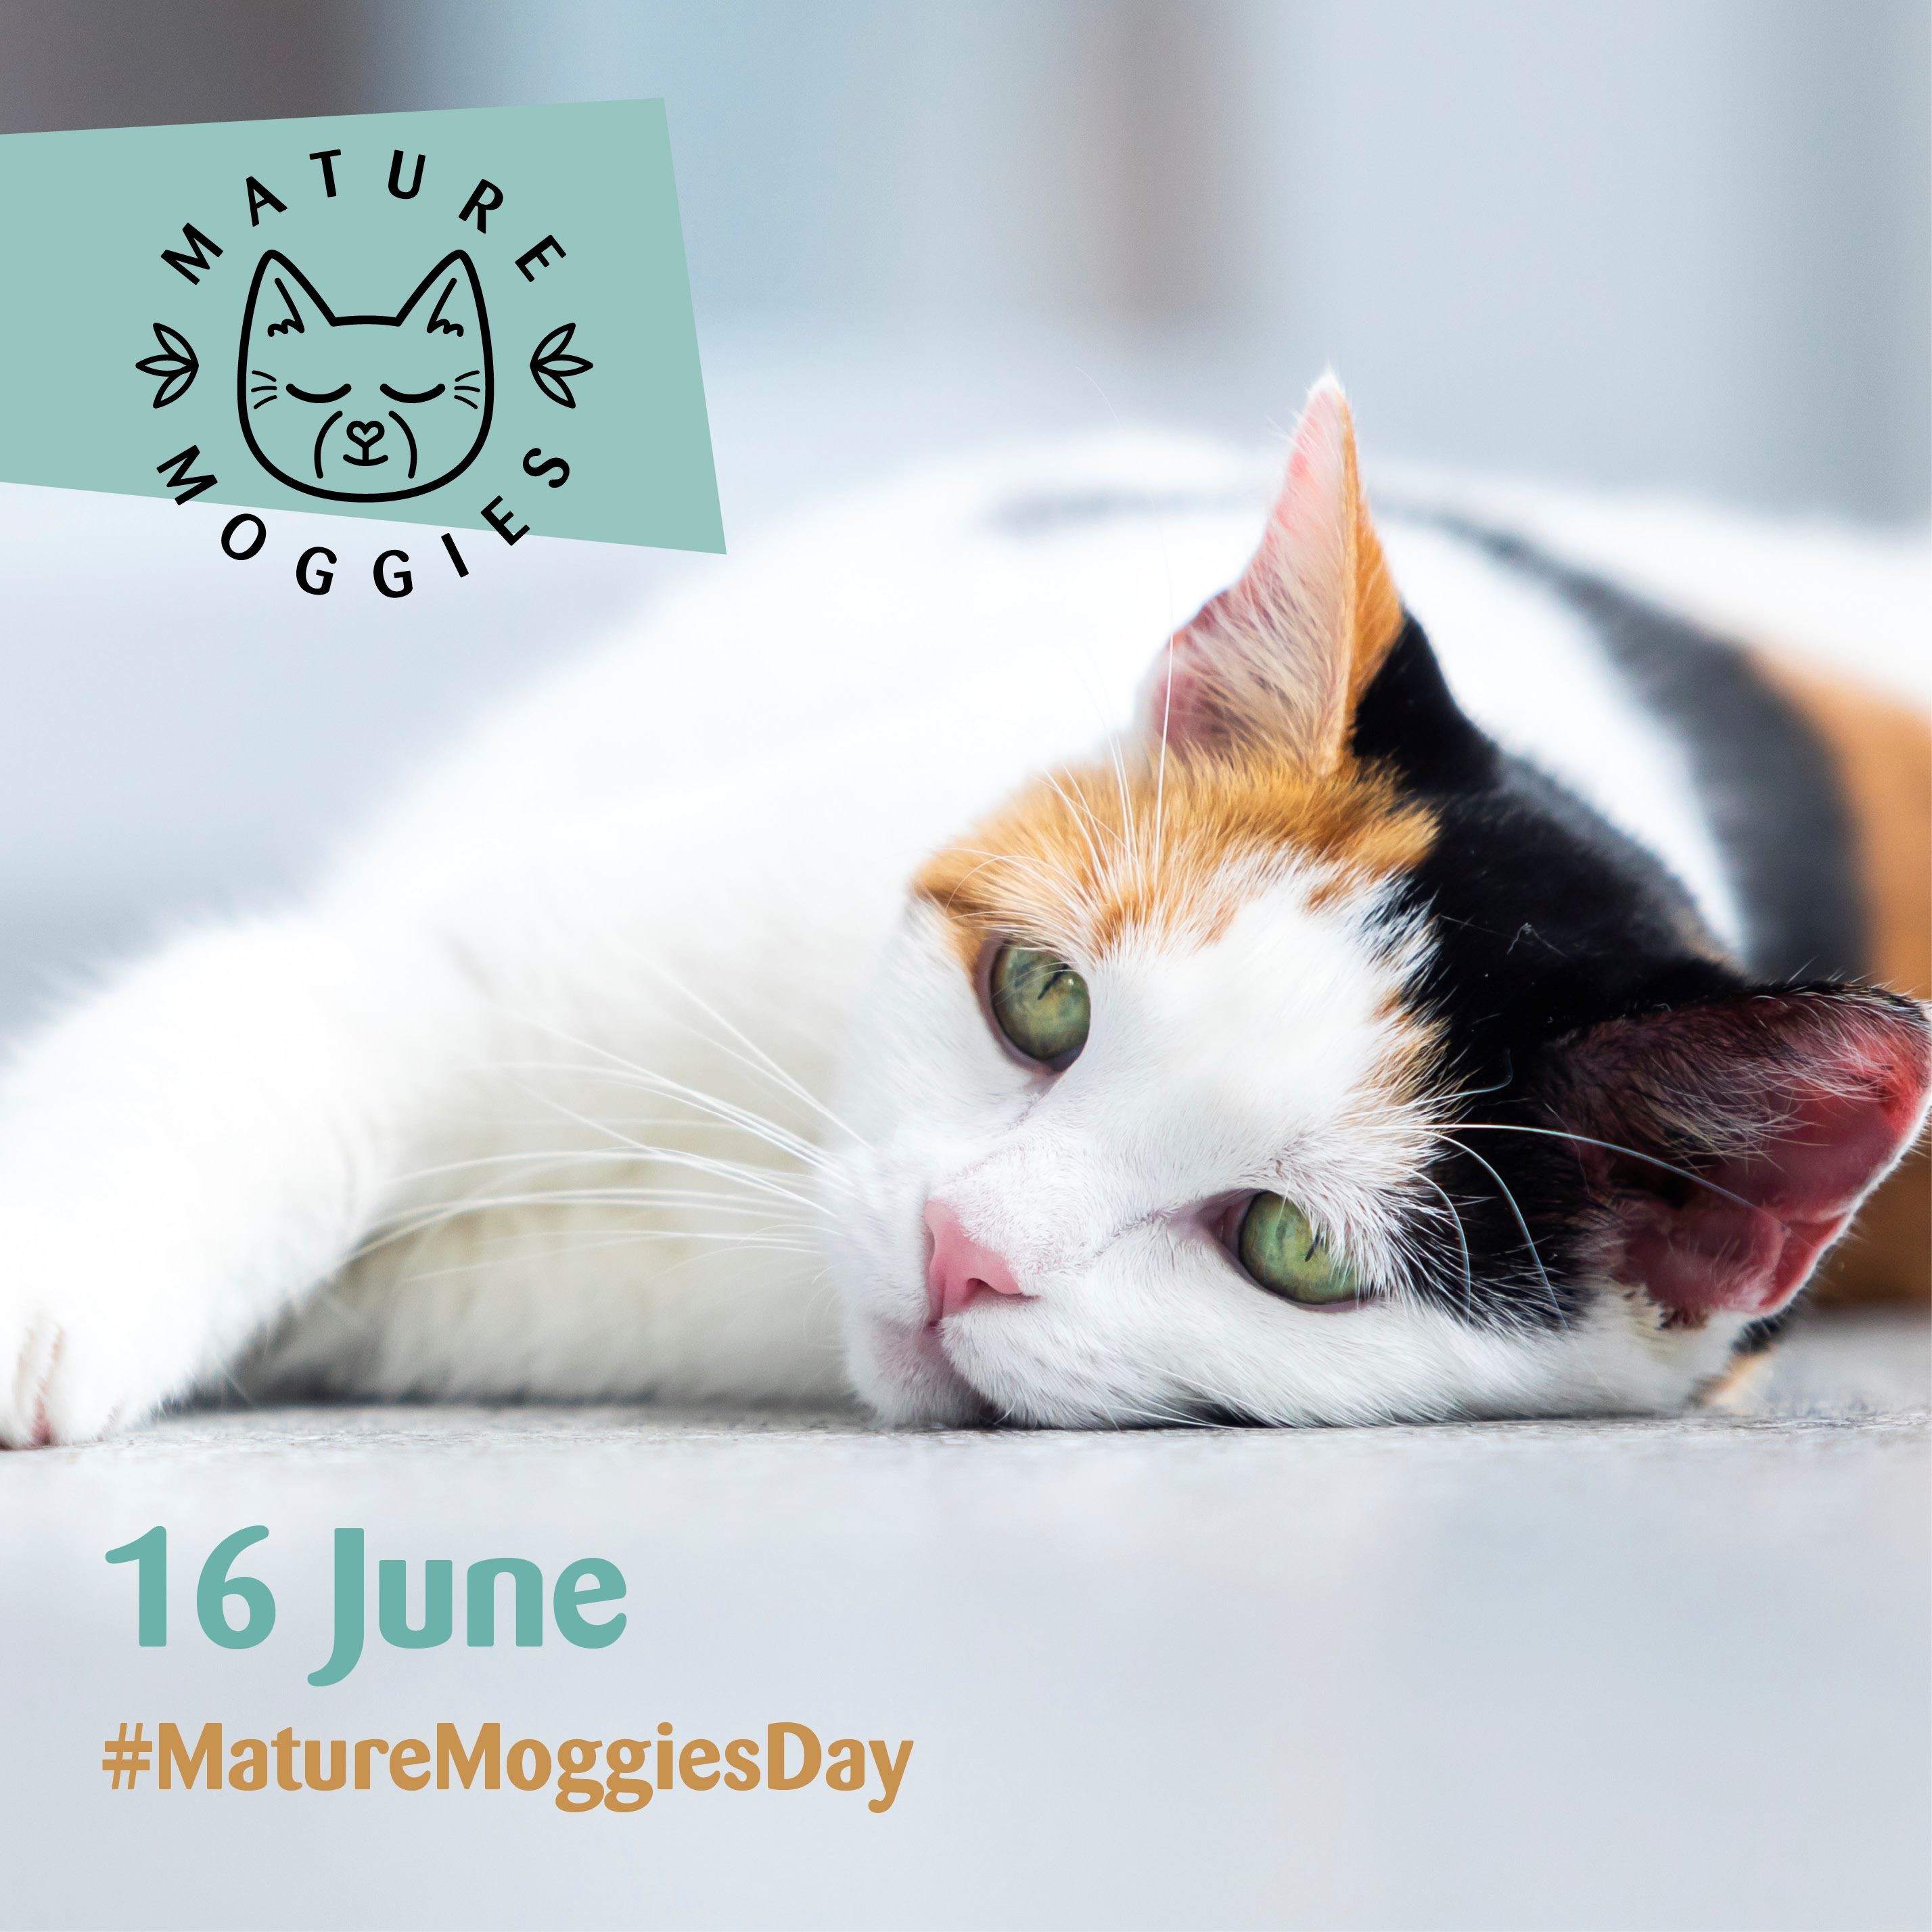 Mature Moggies Day (16 giugno) è un occasione per sostenere i gatti più anziani che impiegano tre volte più tempo per trovare una nuova casa rispetto ai gatti e ai gattini più giovani